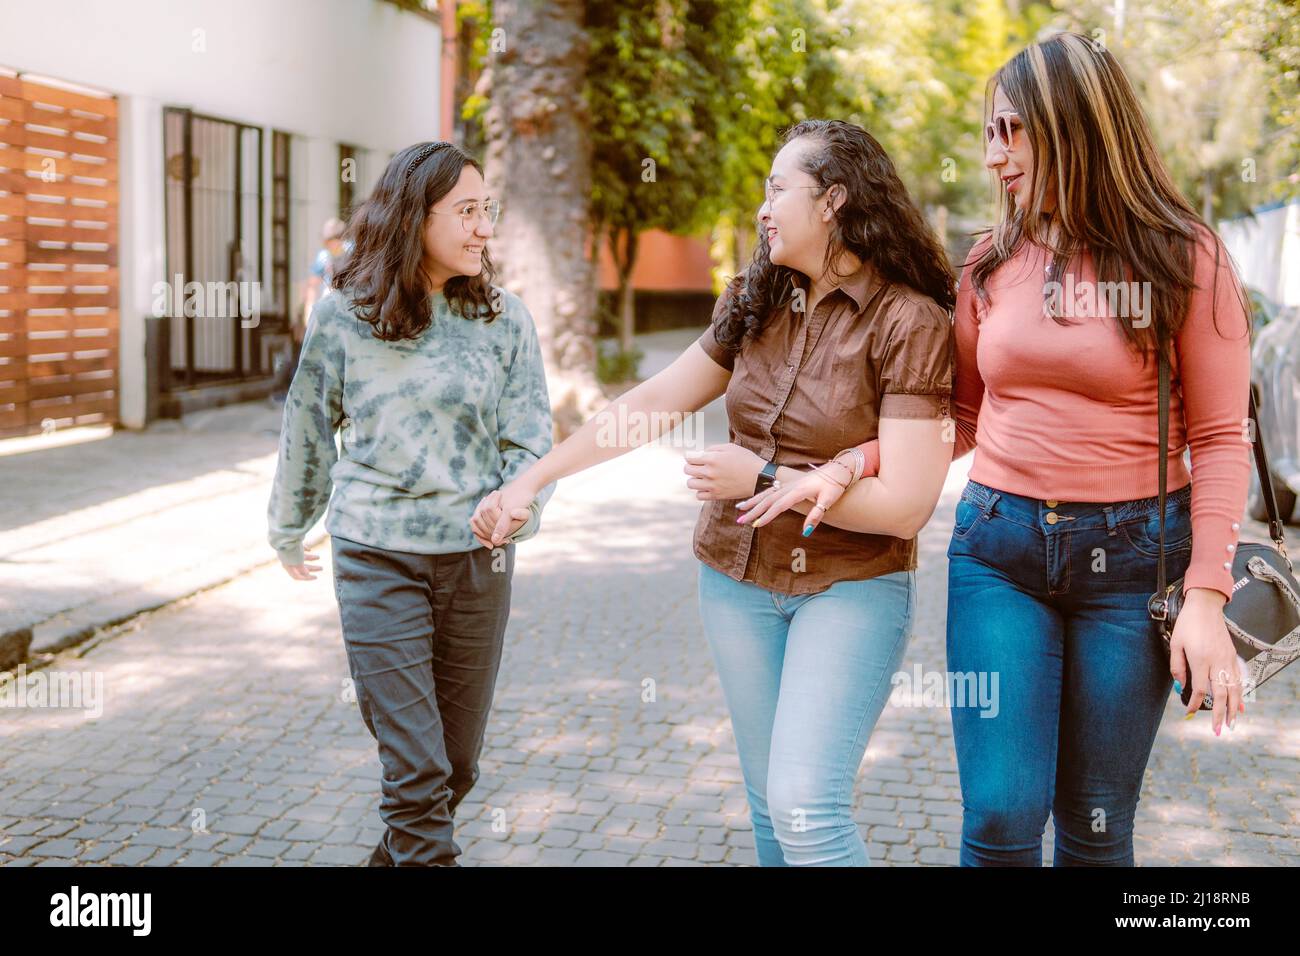 Tre giovani donne stanno camminando lungo la strada, stanno sorridendo, stanno giocando ed avendo un buon tempo. Foto Stock